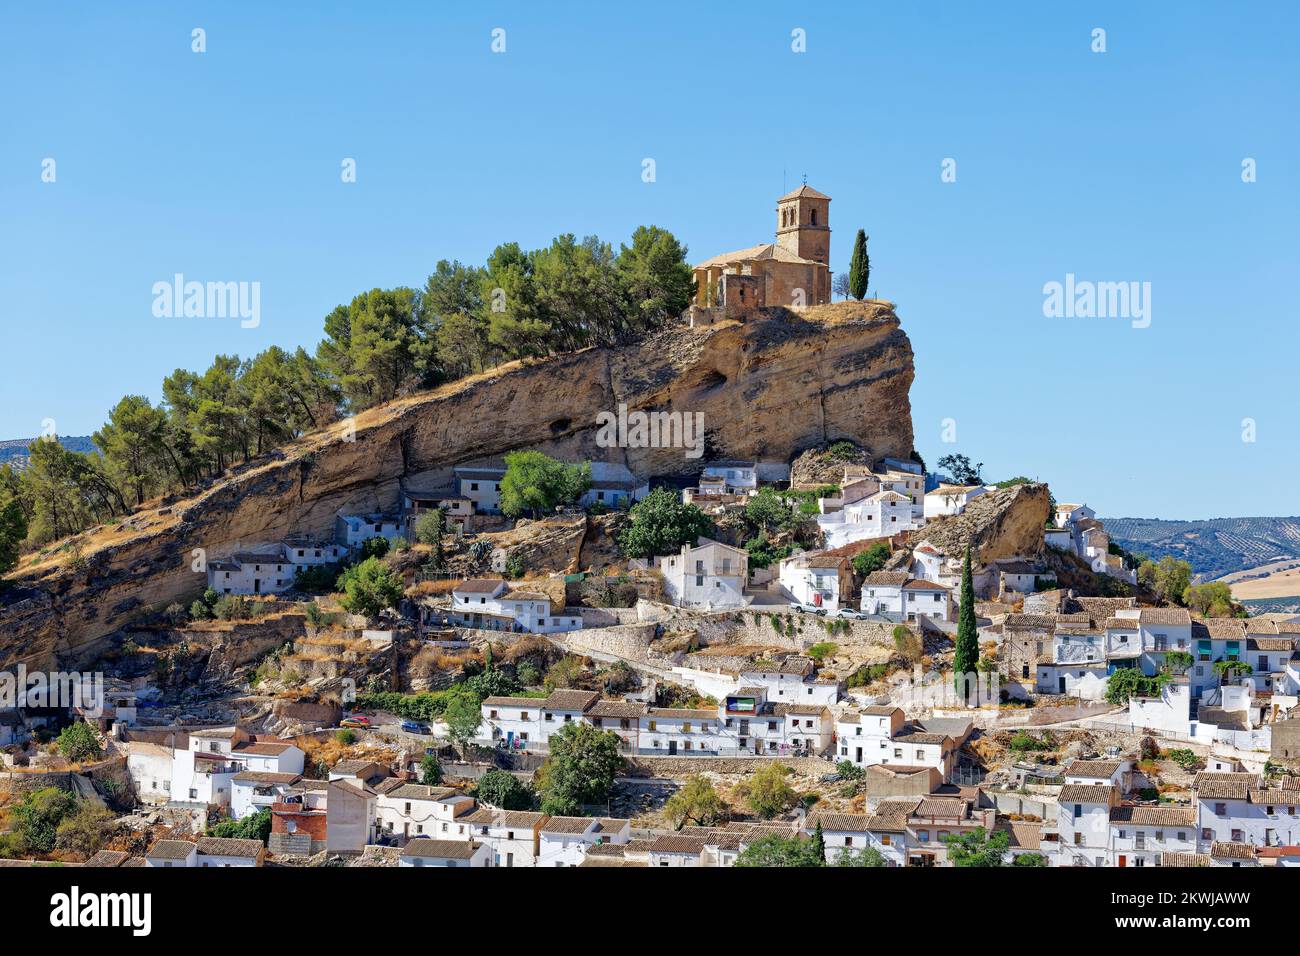 Vue sur le village blanc de Montefrio en Espagne considéré comme l'un des meilleurs points de vue dans le monde. Destination touristique. Vacances et vacances. Banque D'Images